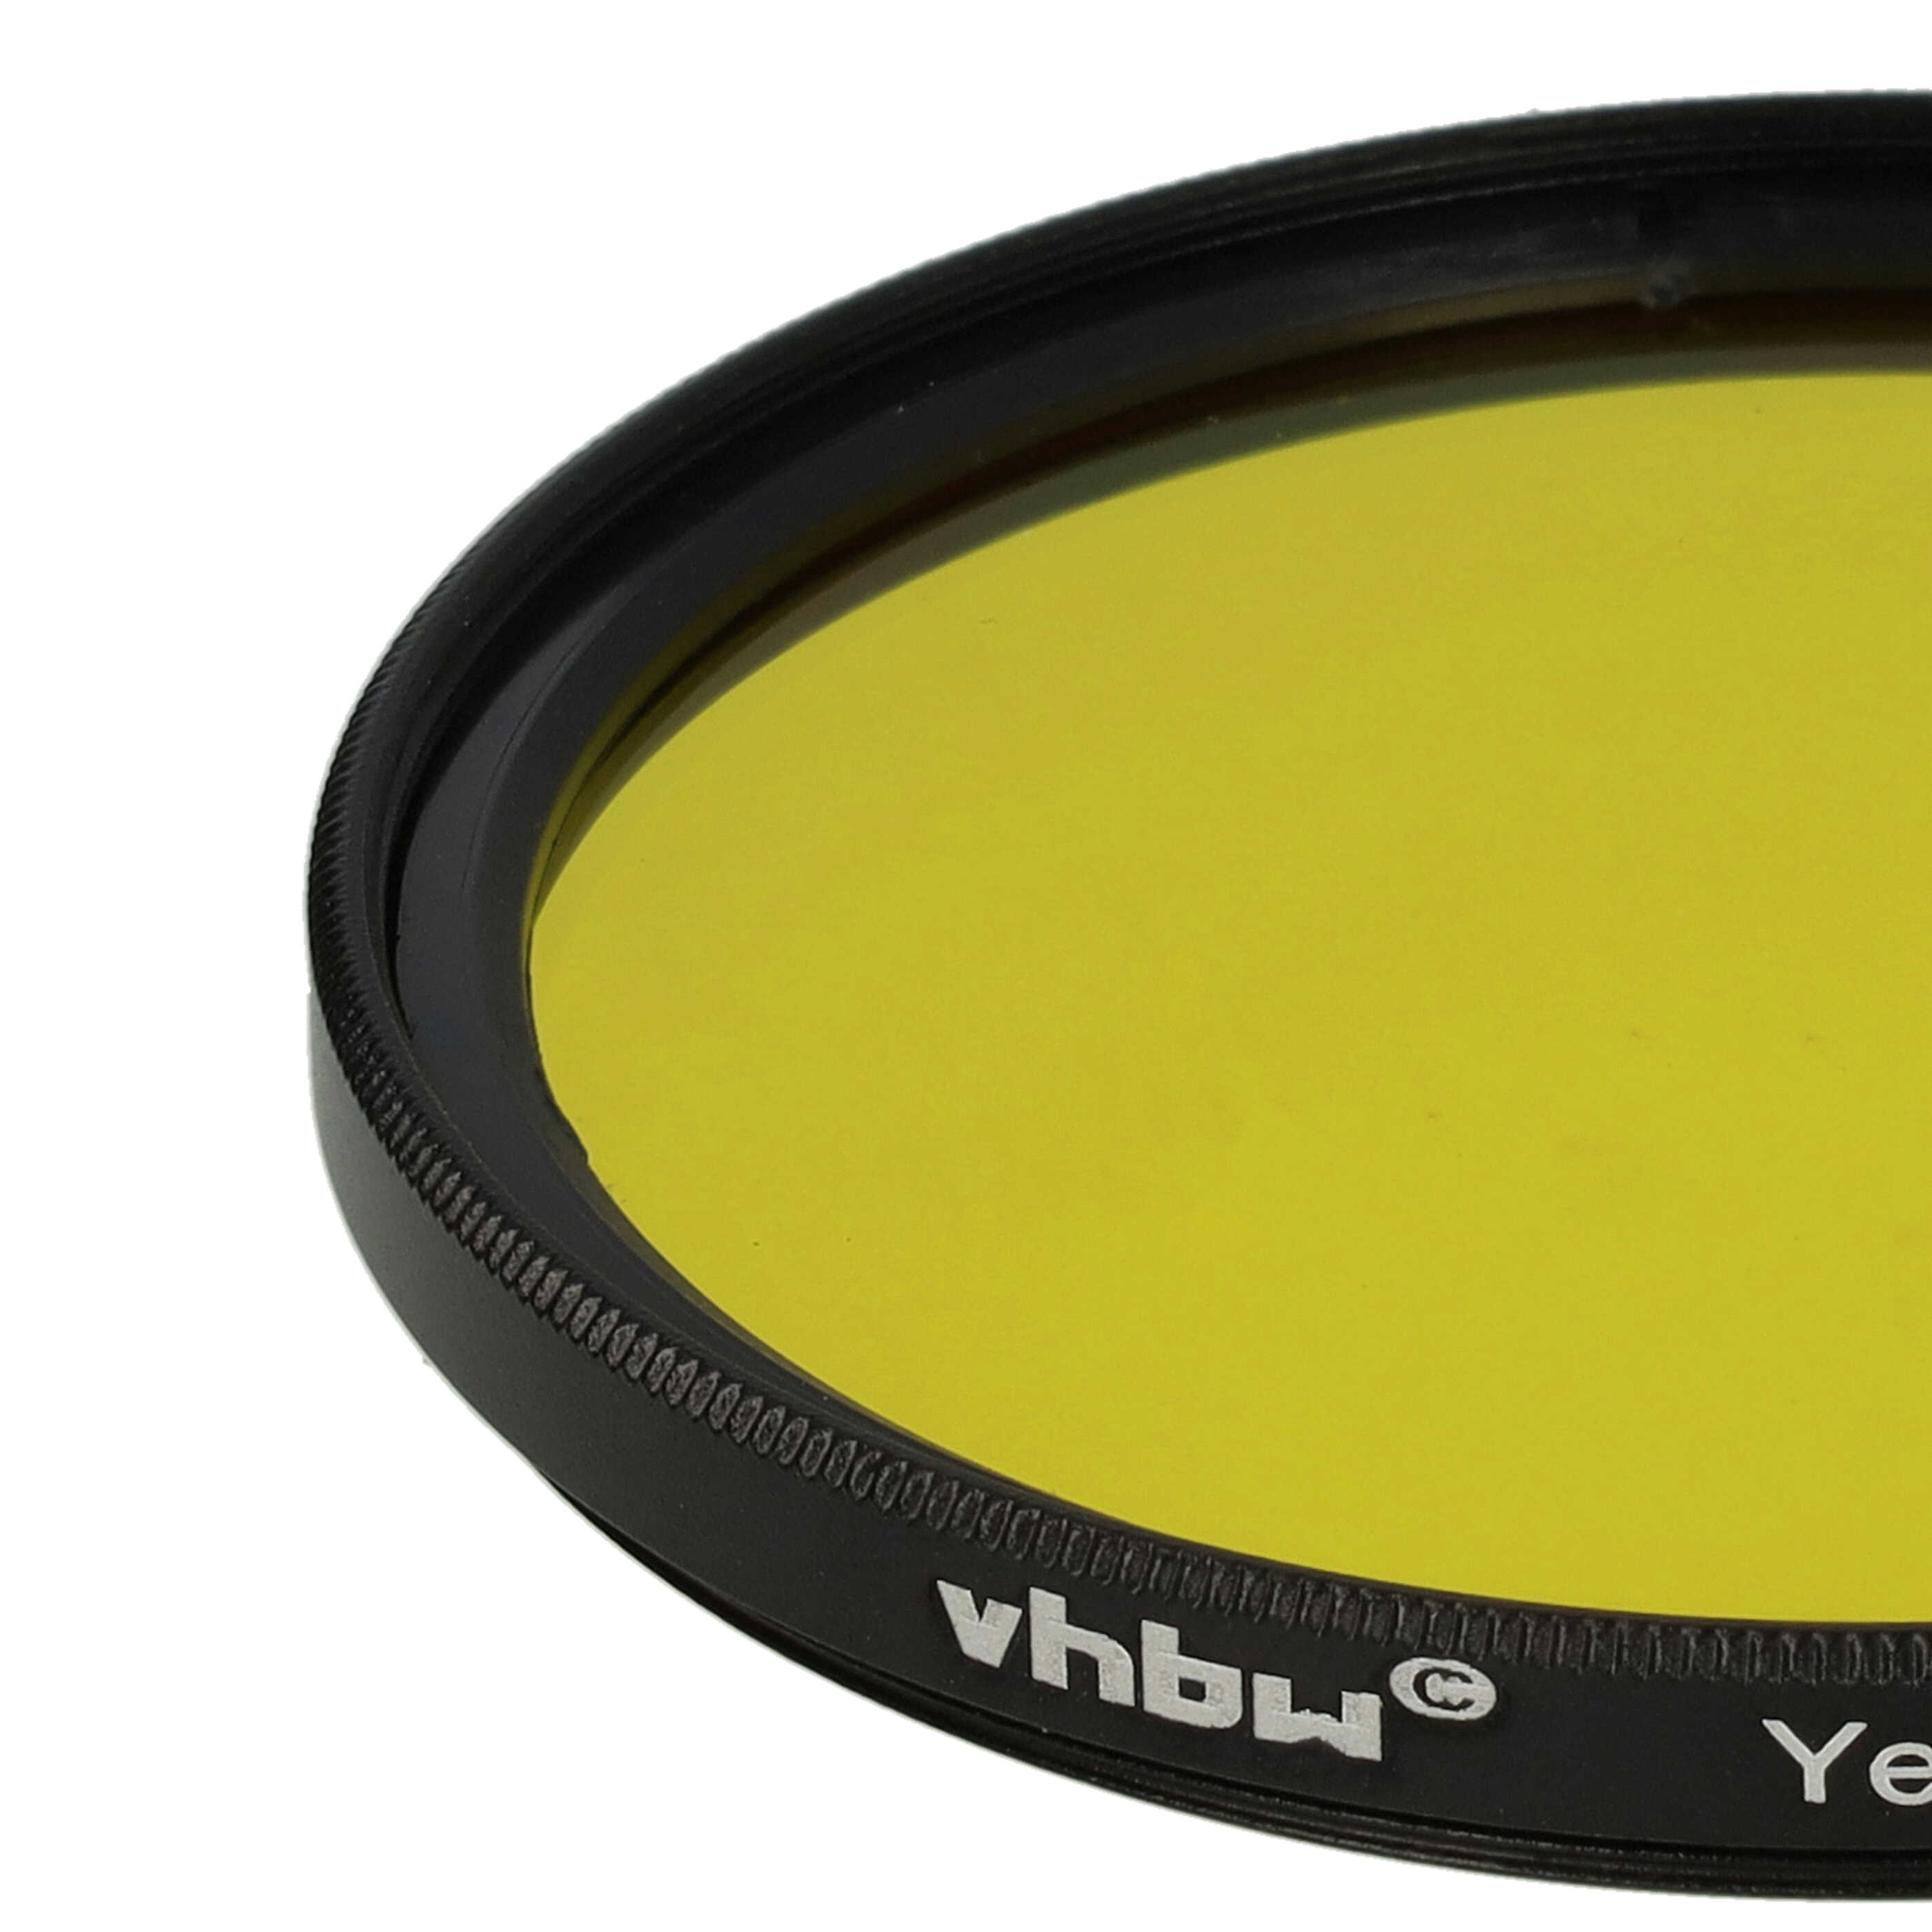 Farbfilter gelb passend für Kamera Objektive mit 58 mm Filtergewinde - Gelbfilter